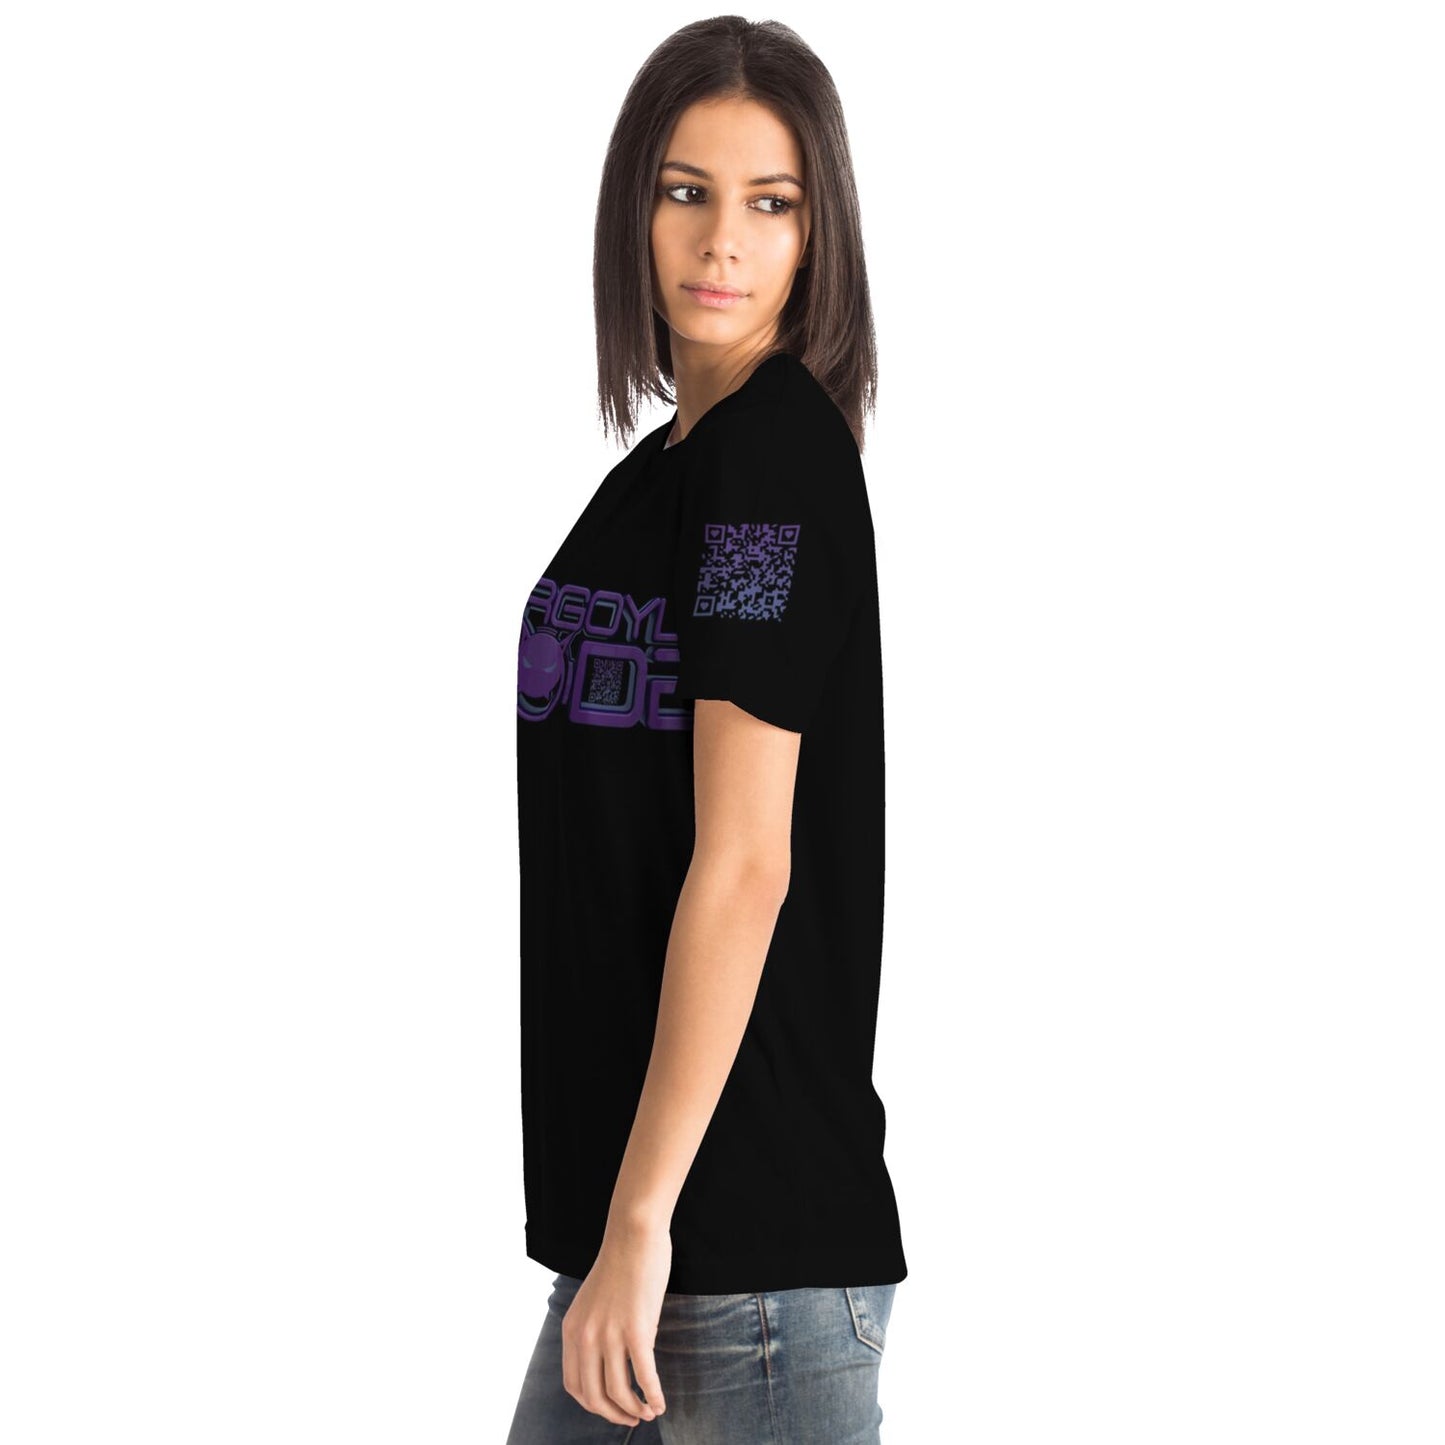 Gargoyle MODE QR Logo T-Shirt